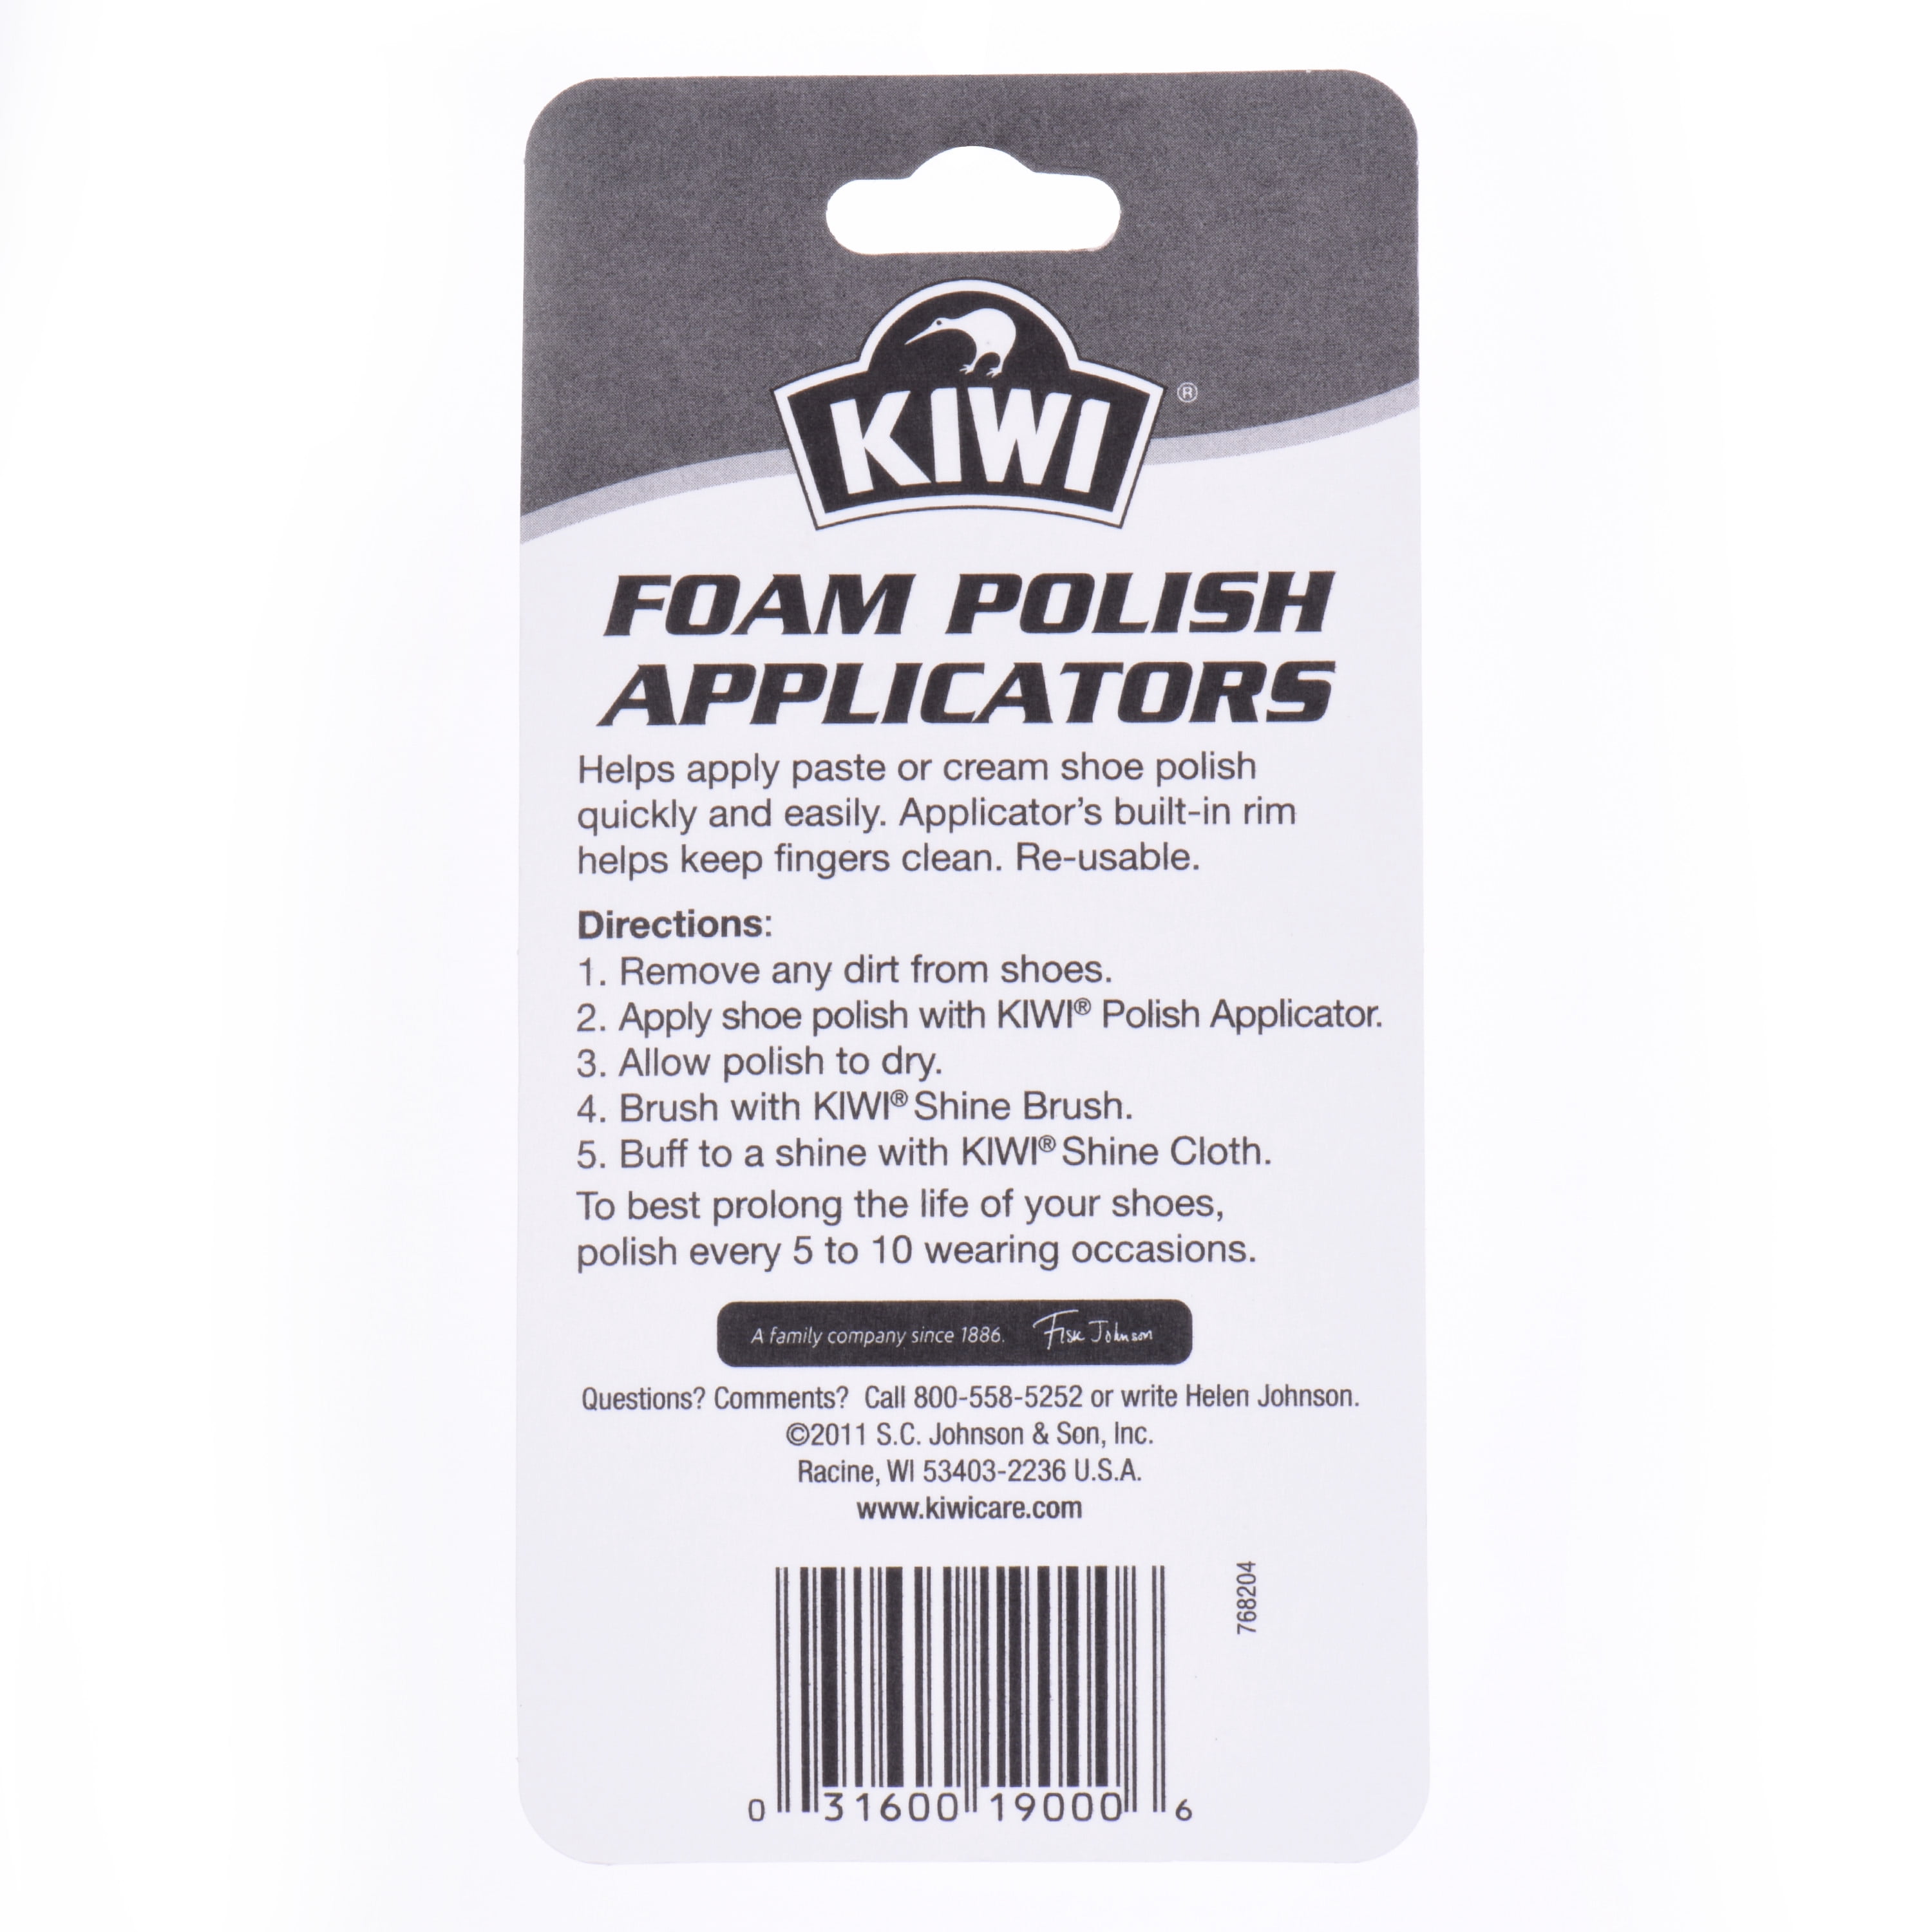 kiwi foam polish applicators